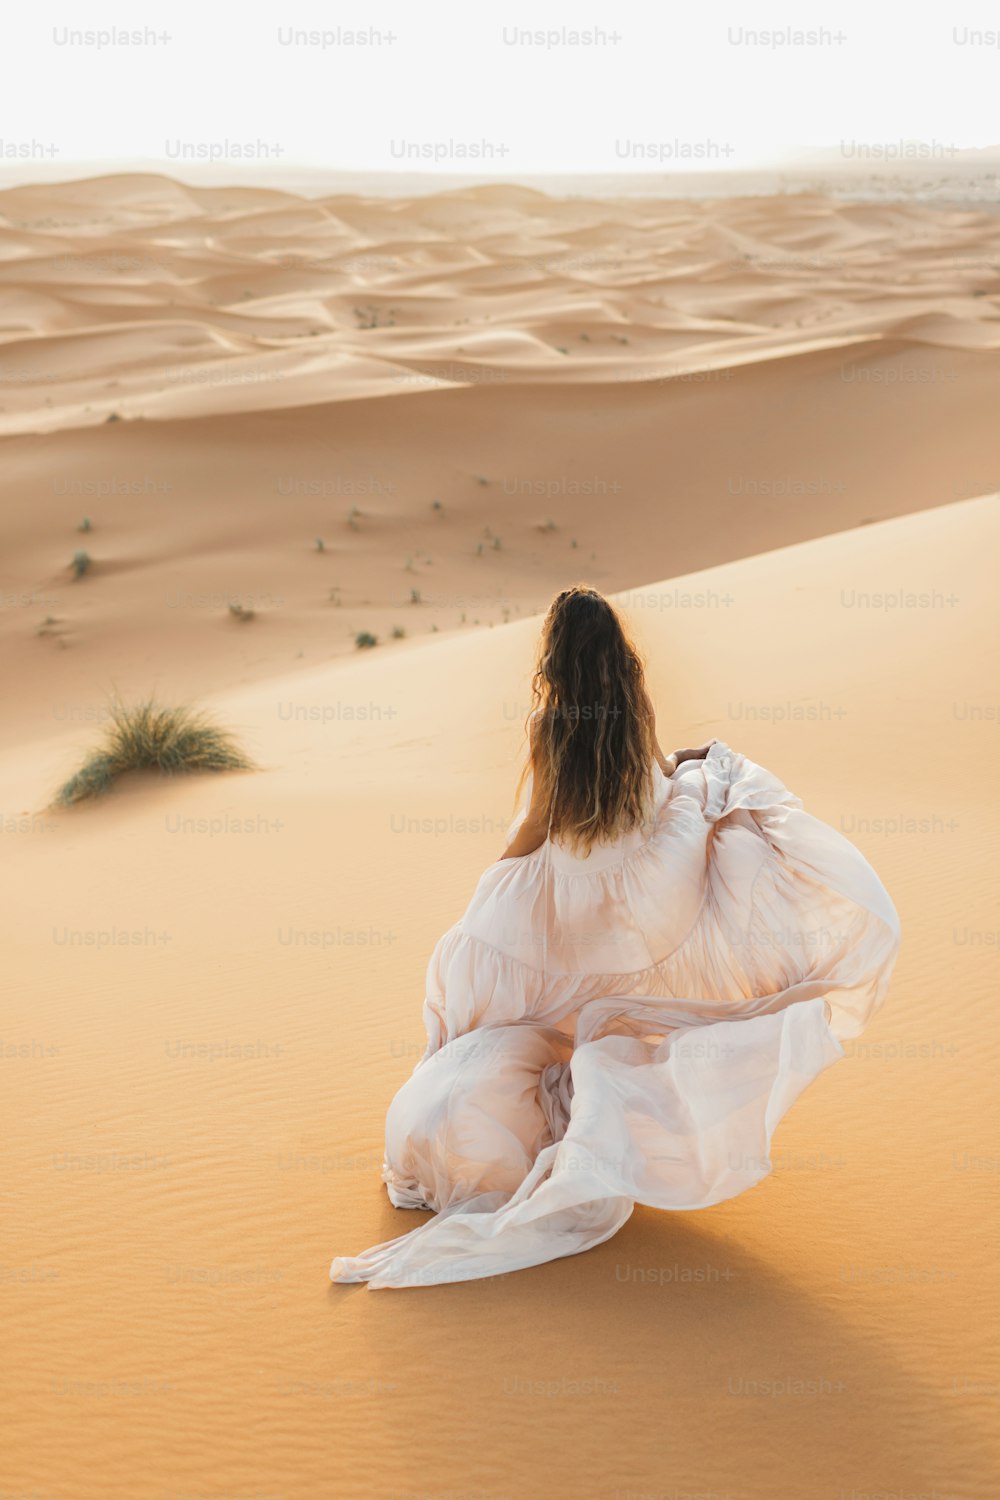 모로코 사하라 사막에서 놀라운 웨딩 드레스를 입은 신부 여자의 초상화. 따뜻한 저녁 빛, 아름다운 파스텔 톤, 수평선의 모래 언덕. 뒤에서 봅니다.